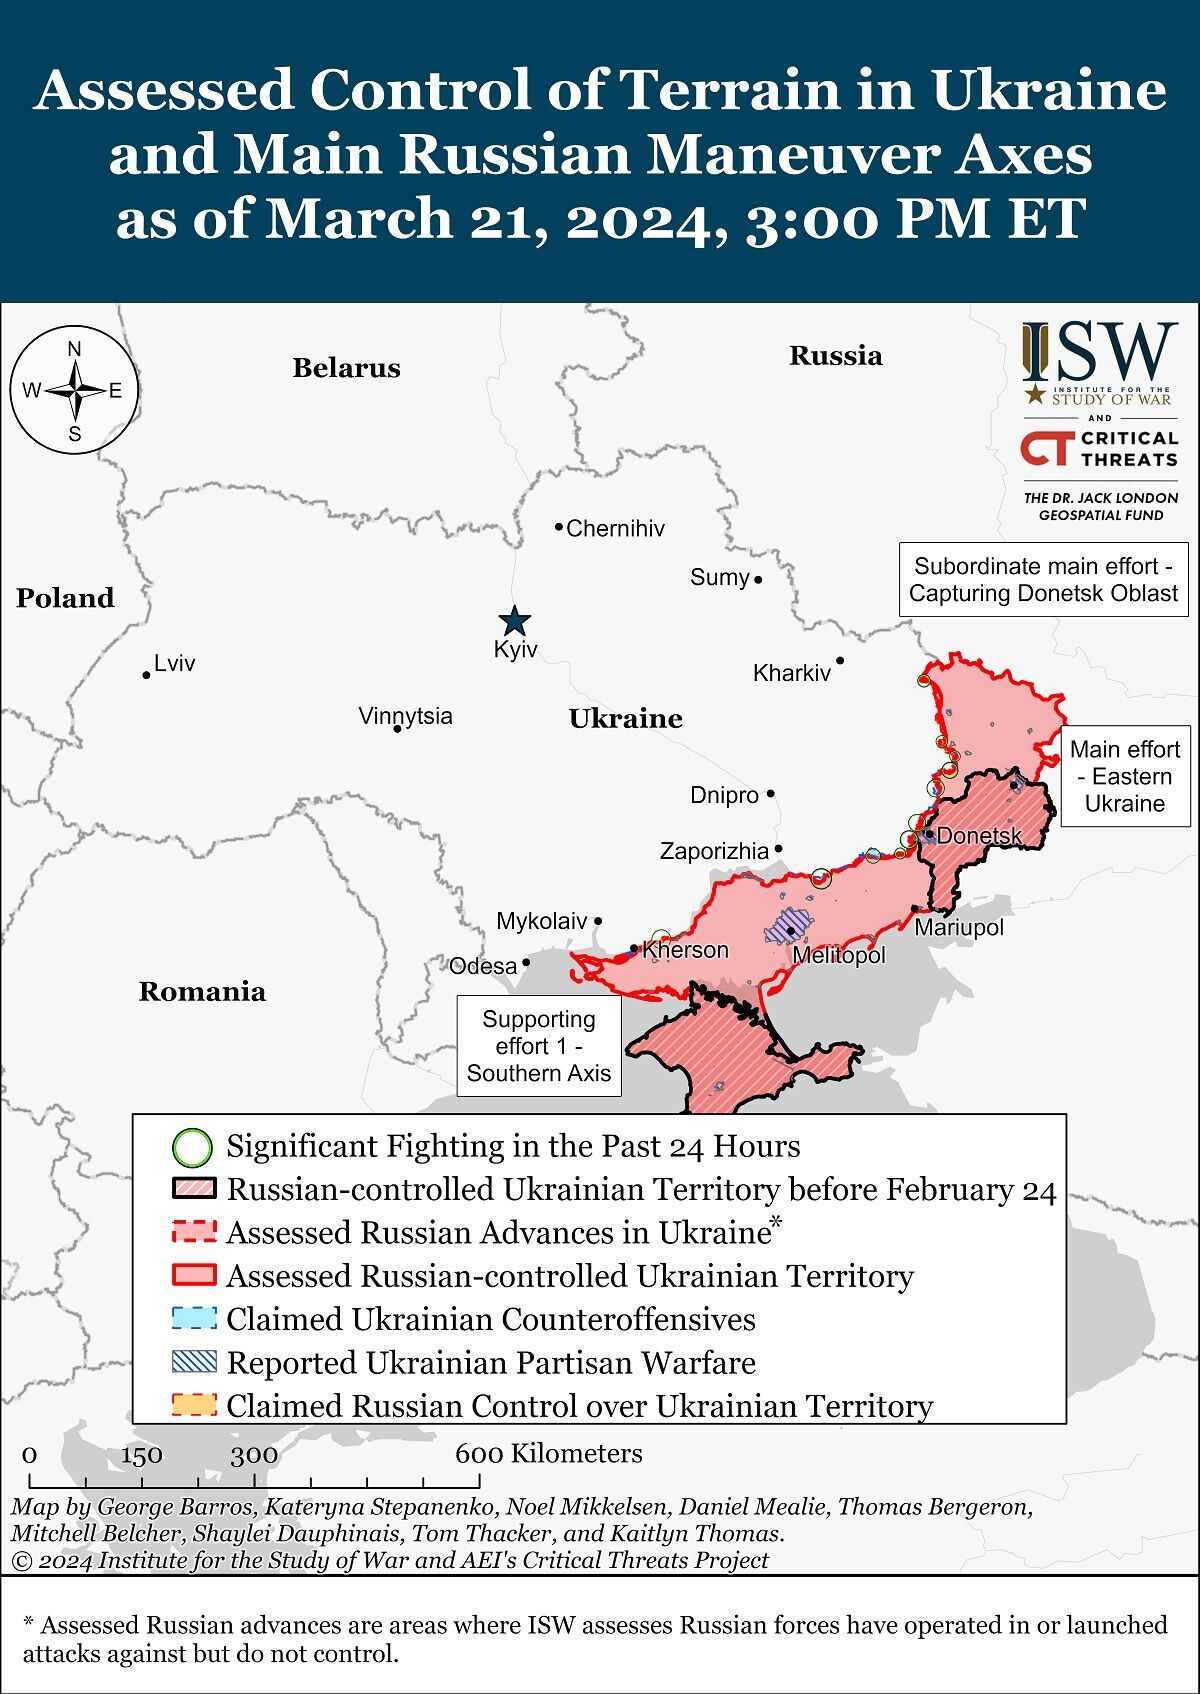 Rosja tworzy rezerwy zdolne do utrzymania tempa operacji ofensywnych na Ukrainie: ISW oceniło plany agresora